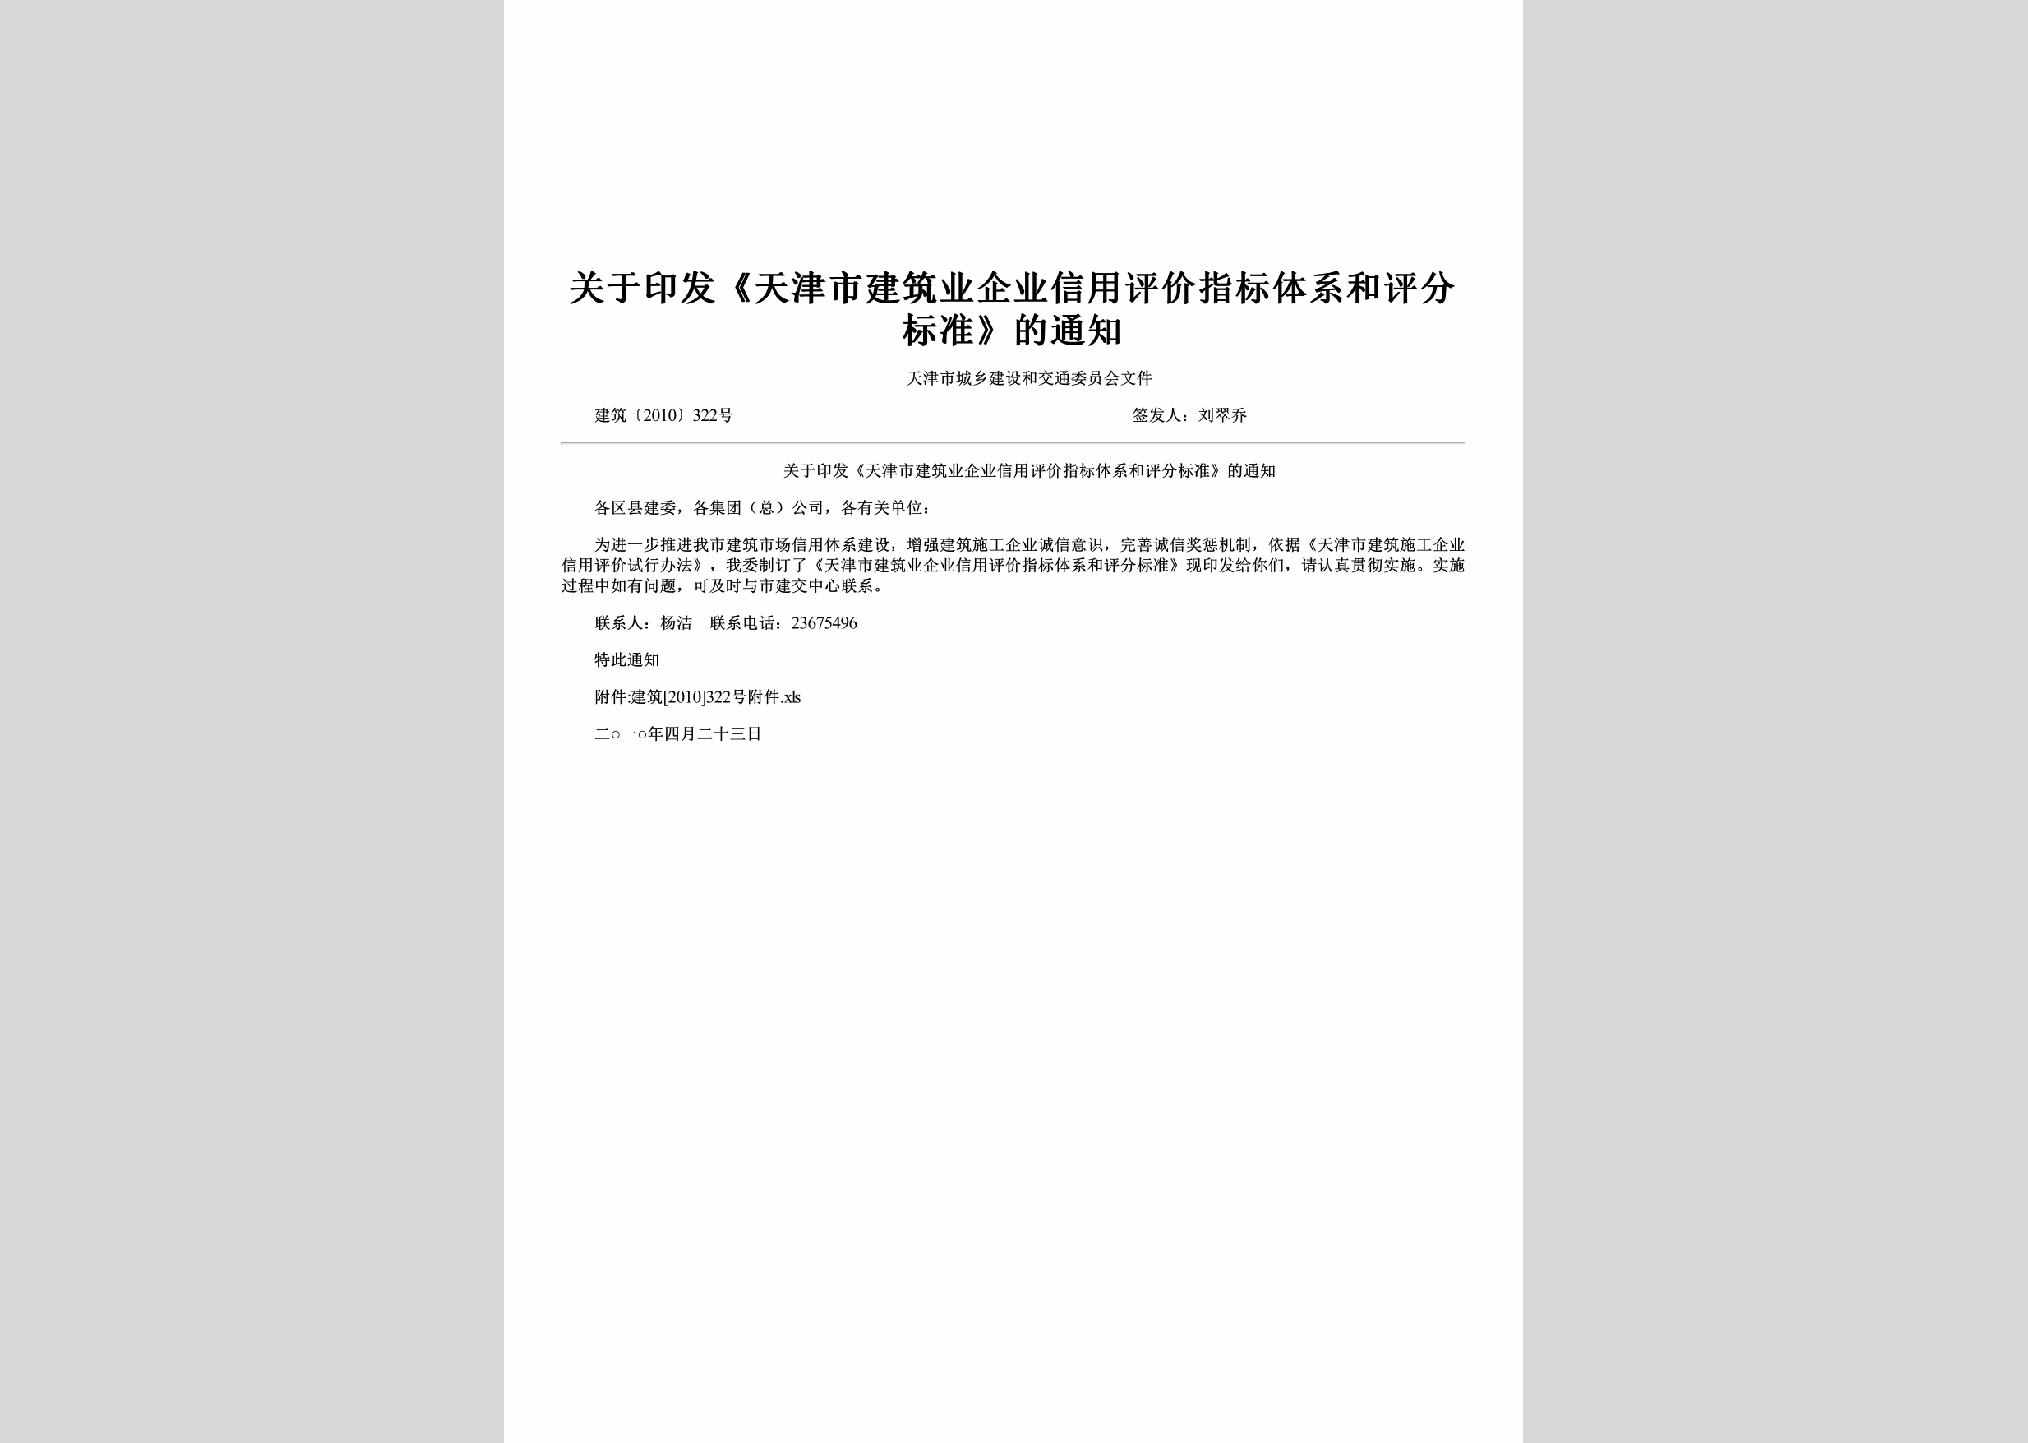 建筑[2010]322号：关于印发《天津市建筑业企业信用评价指标体系和评分标准》的通知